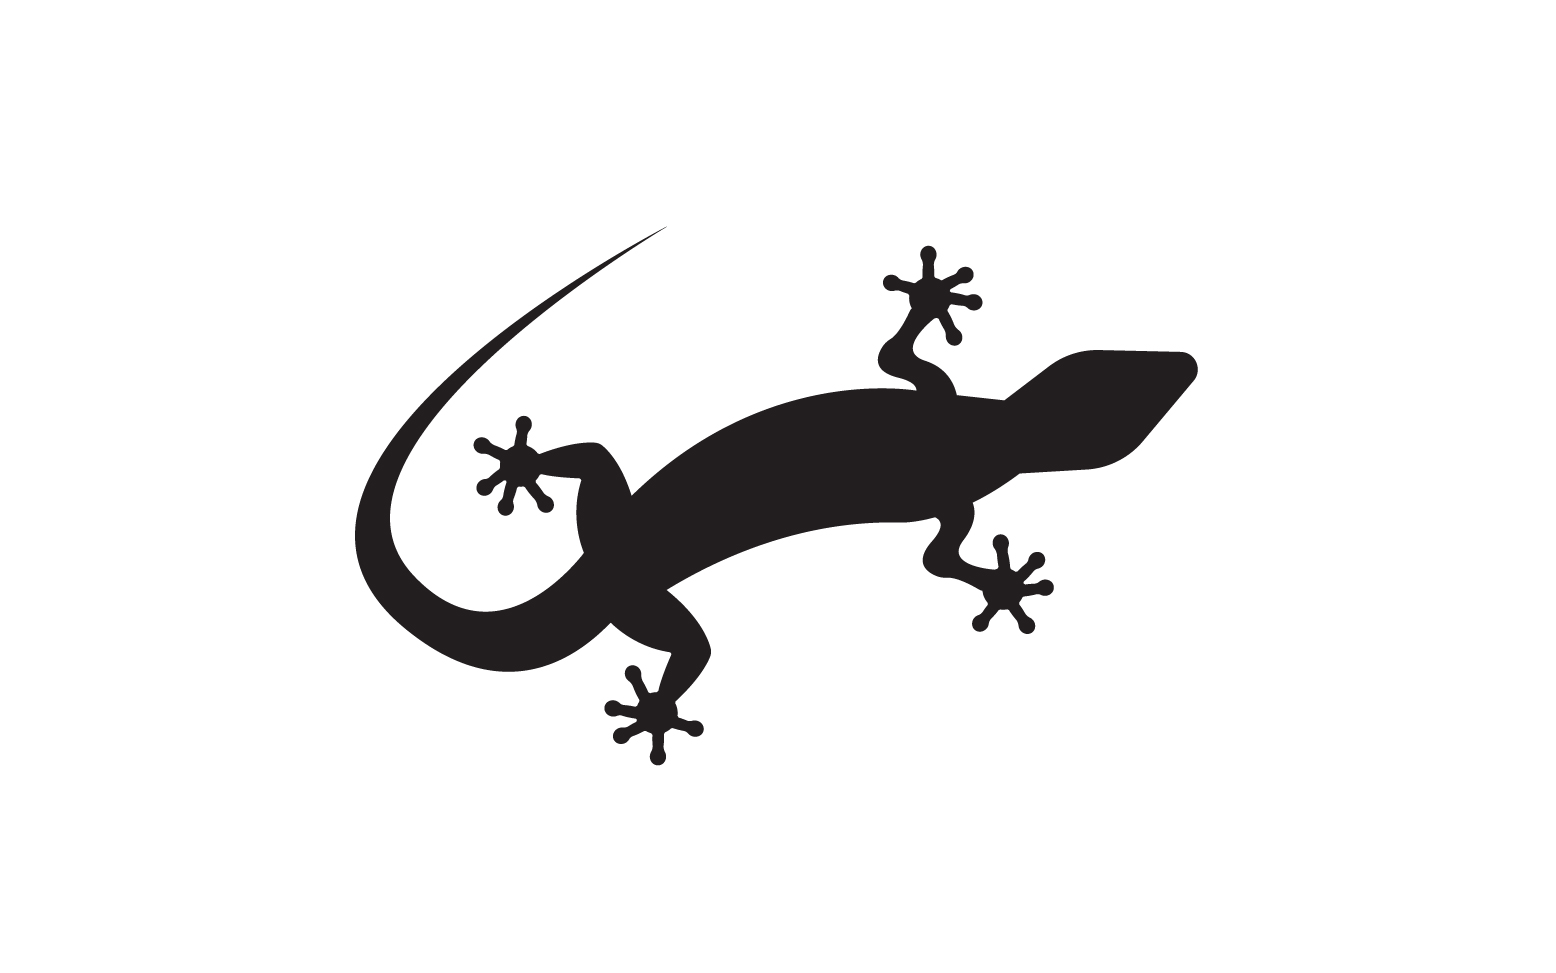 Lizard chameleon home lizard logo v39